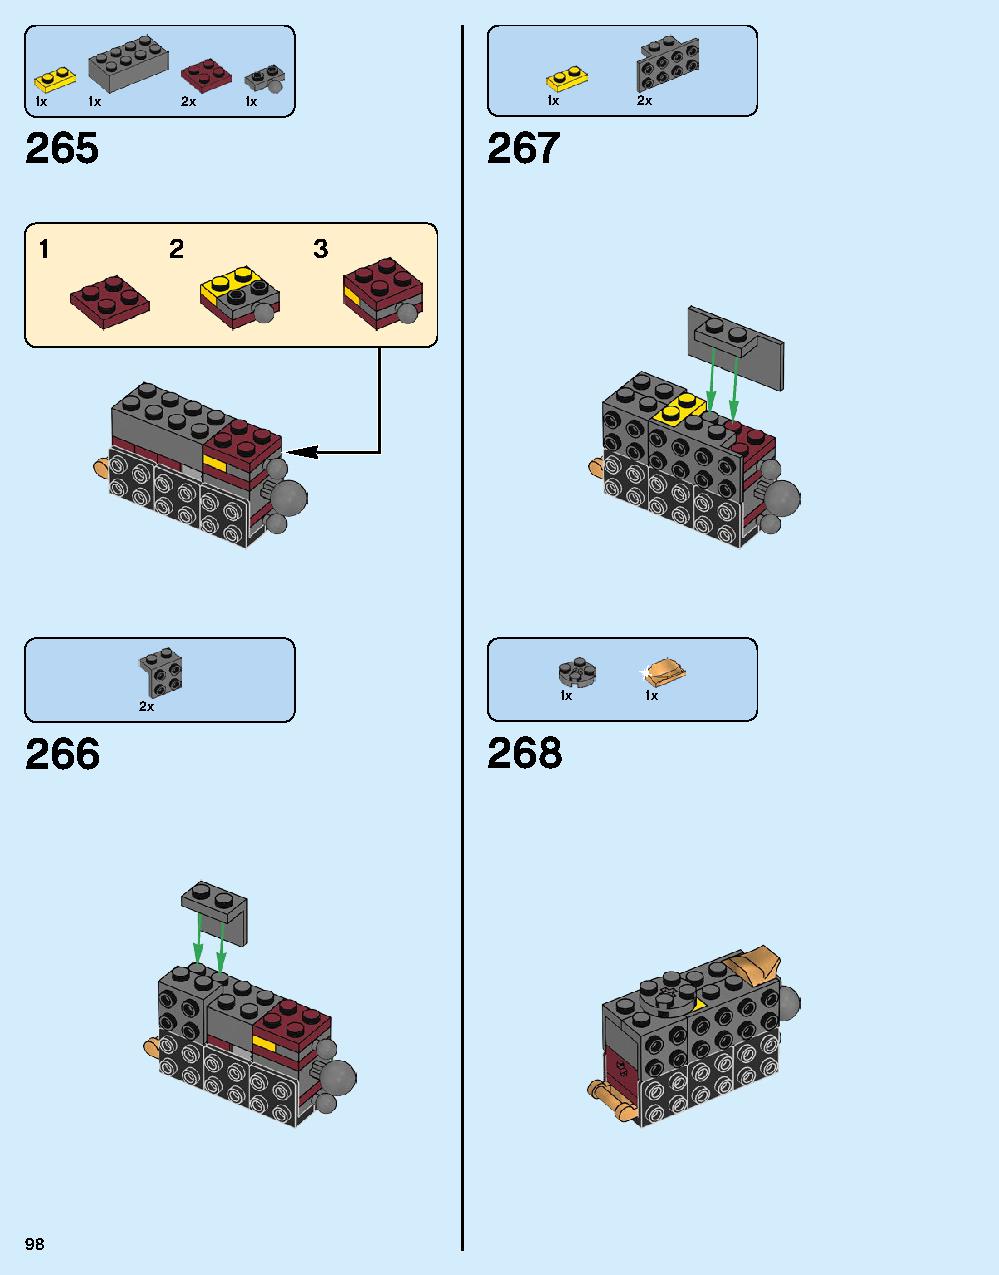 ハルクバスター：ウルトロン・エディション 76105 レゴの商品情報 レゴの説明書・組立方法 98 page